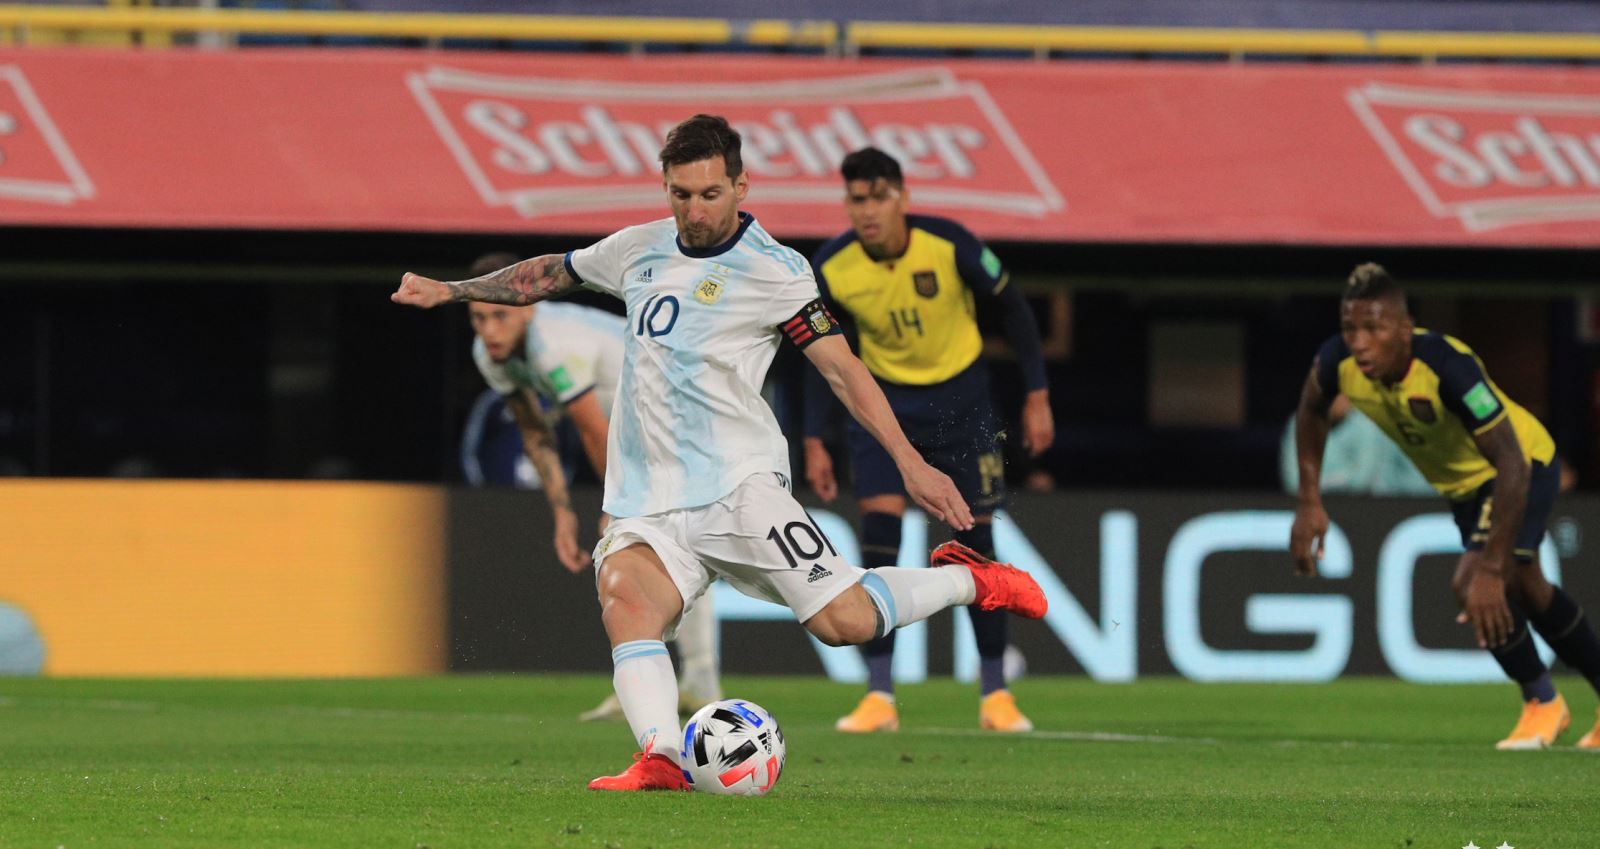 Argentina 1-0 Ecuador, kết quả bóng đá, Argentina, Messi, vòng loại World Cup, kết quả vòng loại World Cup khu vực Nam Mỹ, kết quả Arsenal đấu với ecuadorArgentina 1-0 Ecuador, kết quả bóng đá, Argentina, Messi, vòng loại World Cup, kết quả vòng loại World Cup khu vực Nam Mỹ, kết quả Arsenal đấu với ecuador